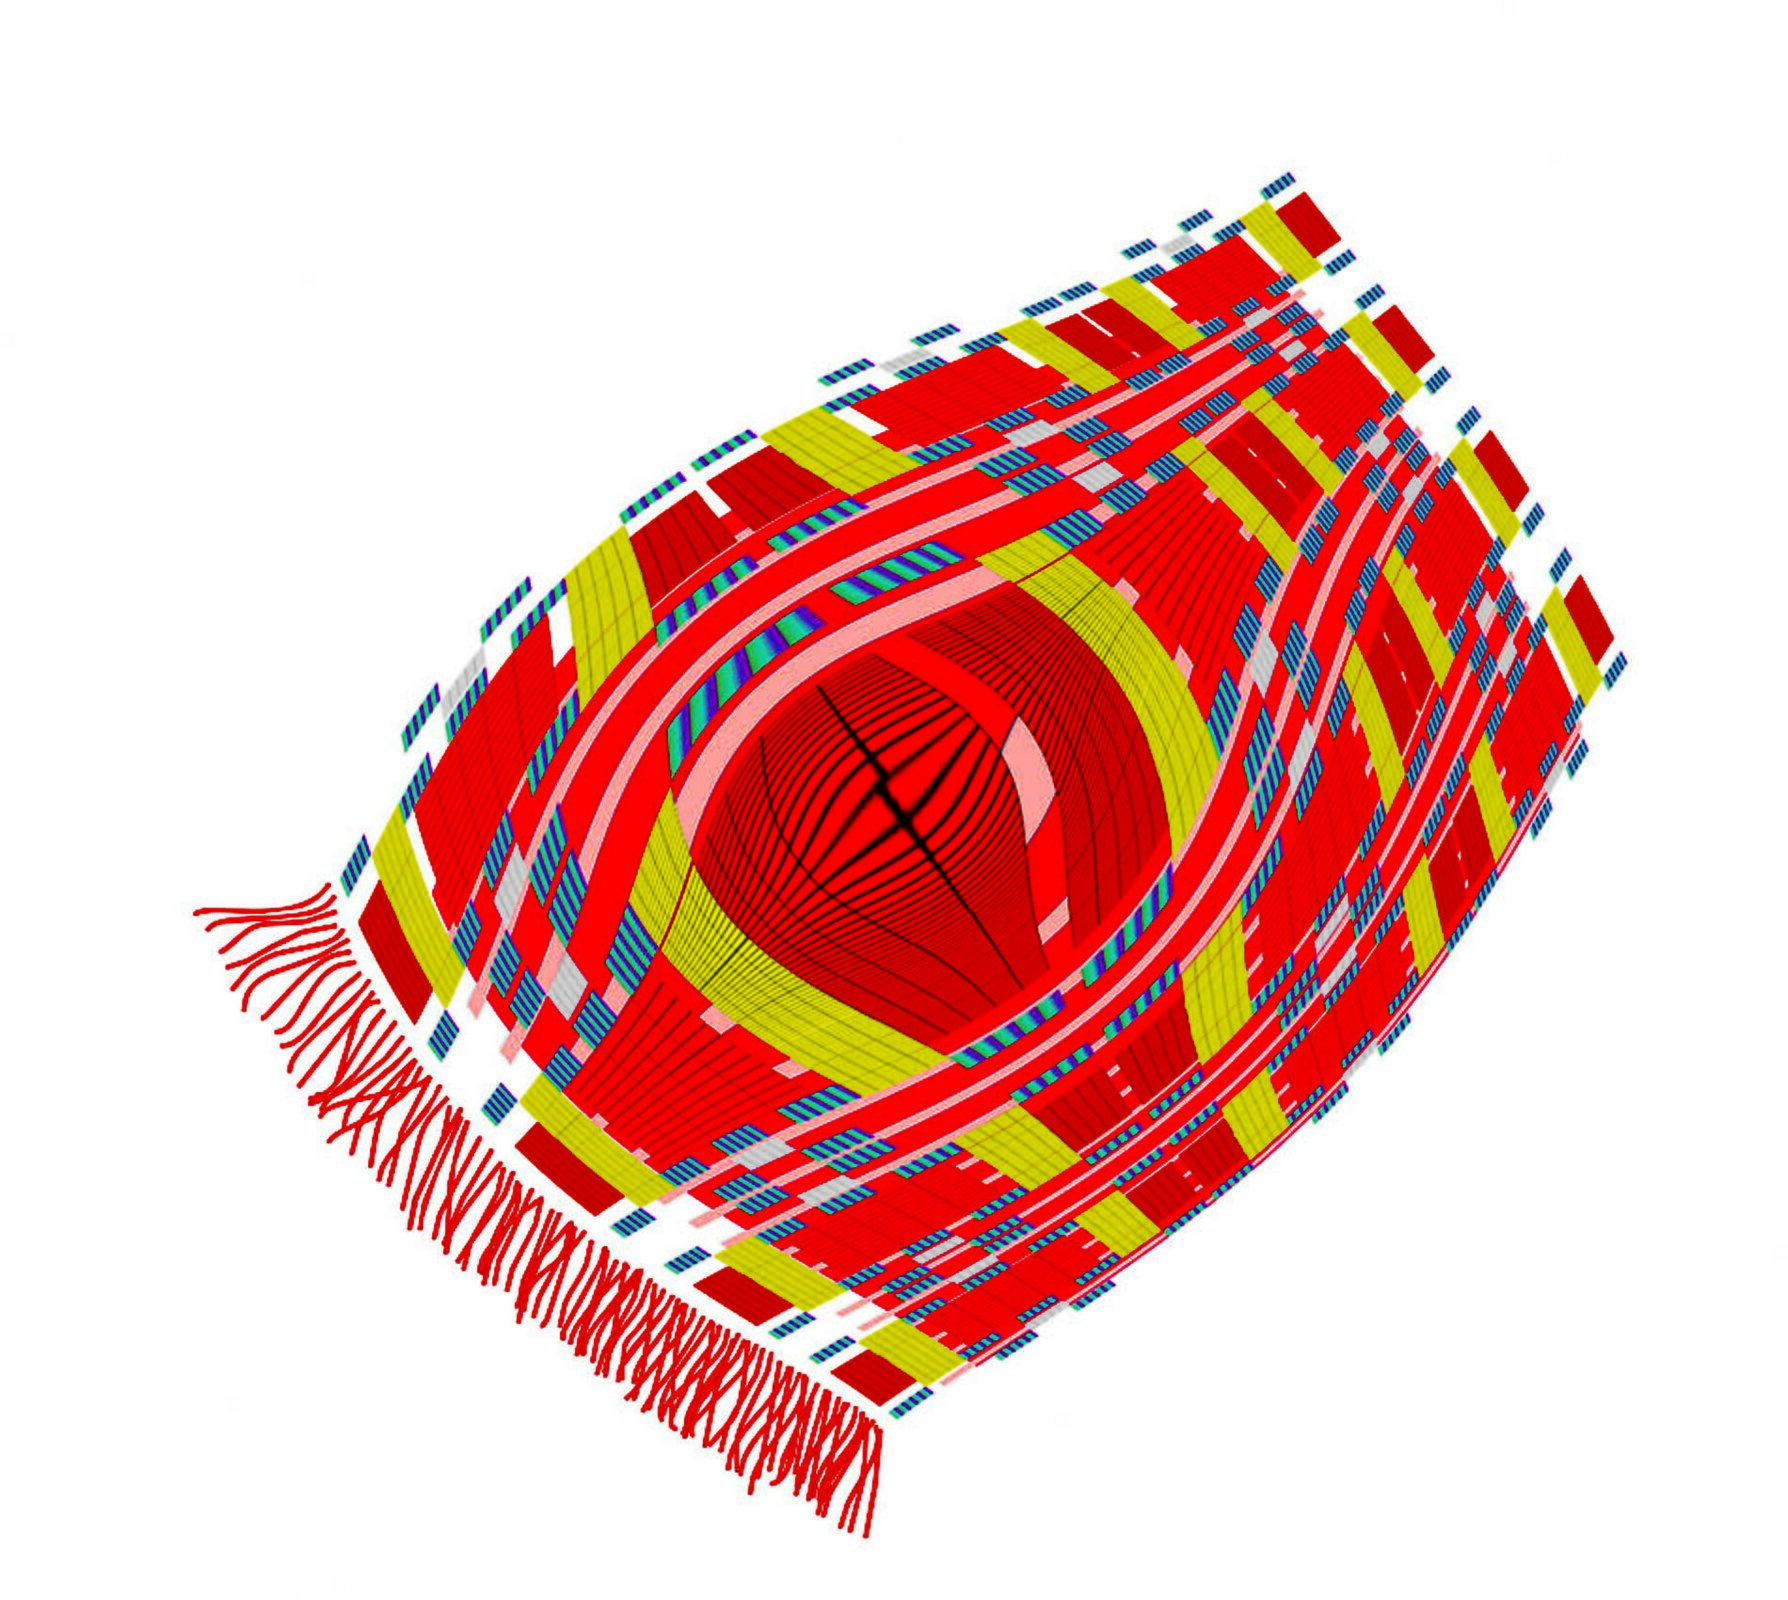 Ilustracja przedstawiająca kolorowy dywan. Jest on lekko uniesiony jakby powiewał na wietrze. Dywan ma liczne wzorki w postaci małych czerwonych kwadracików, zielonych i niebieskich prostokątów, które ułożone są w sposób równoległy do siebie oraz poprzeczny. Na środku dywan jest wybrzuszony, tak że jego wzory w tym miejscu stały się szersze. Z lewej strony dywan zakończony jest czerwonymi frędzlami. Tło jest białe.